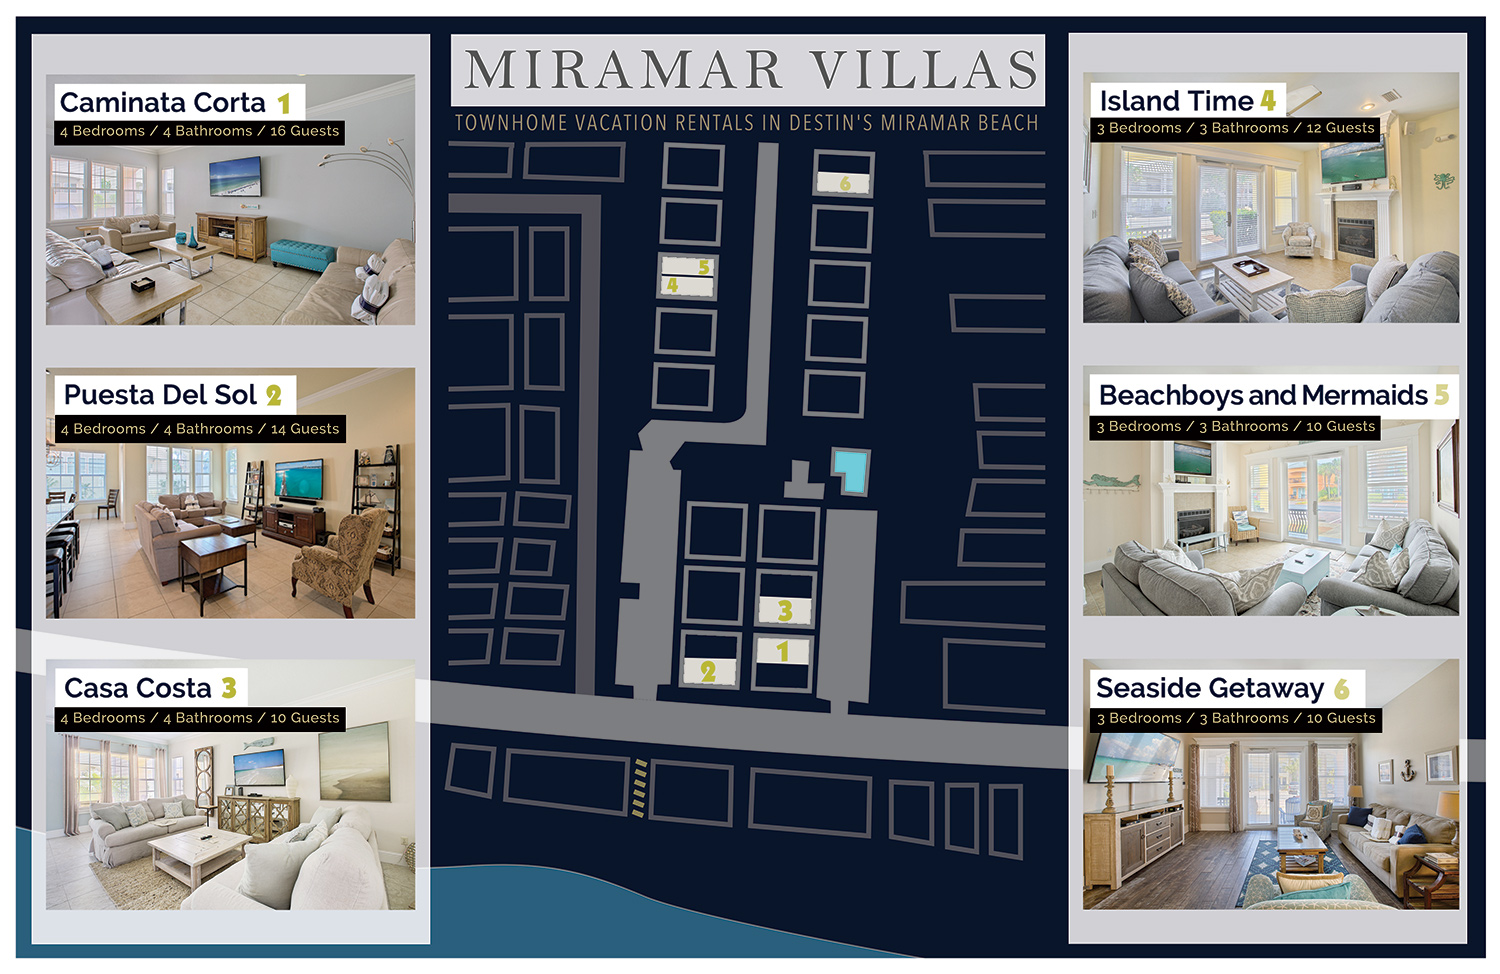 Map of Miramar Beach Villas